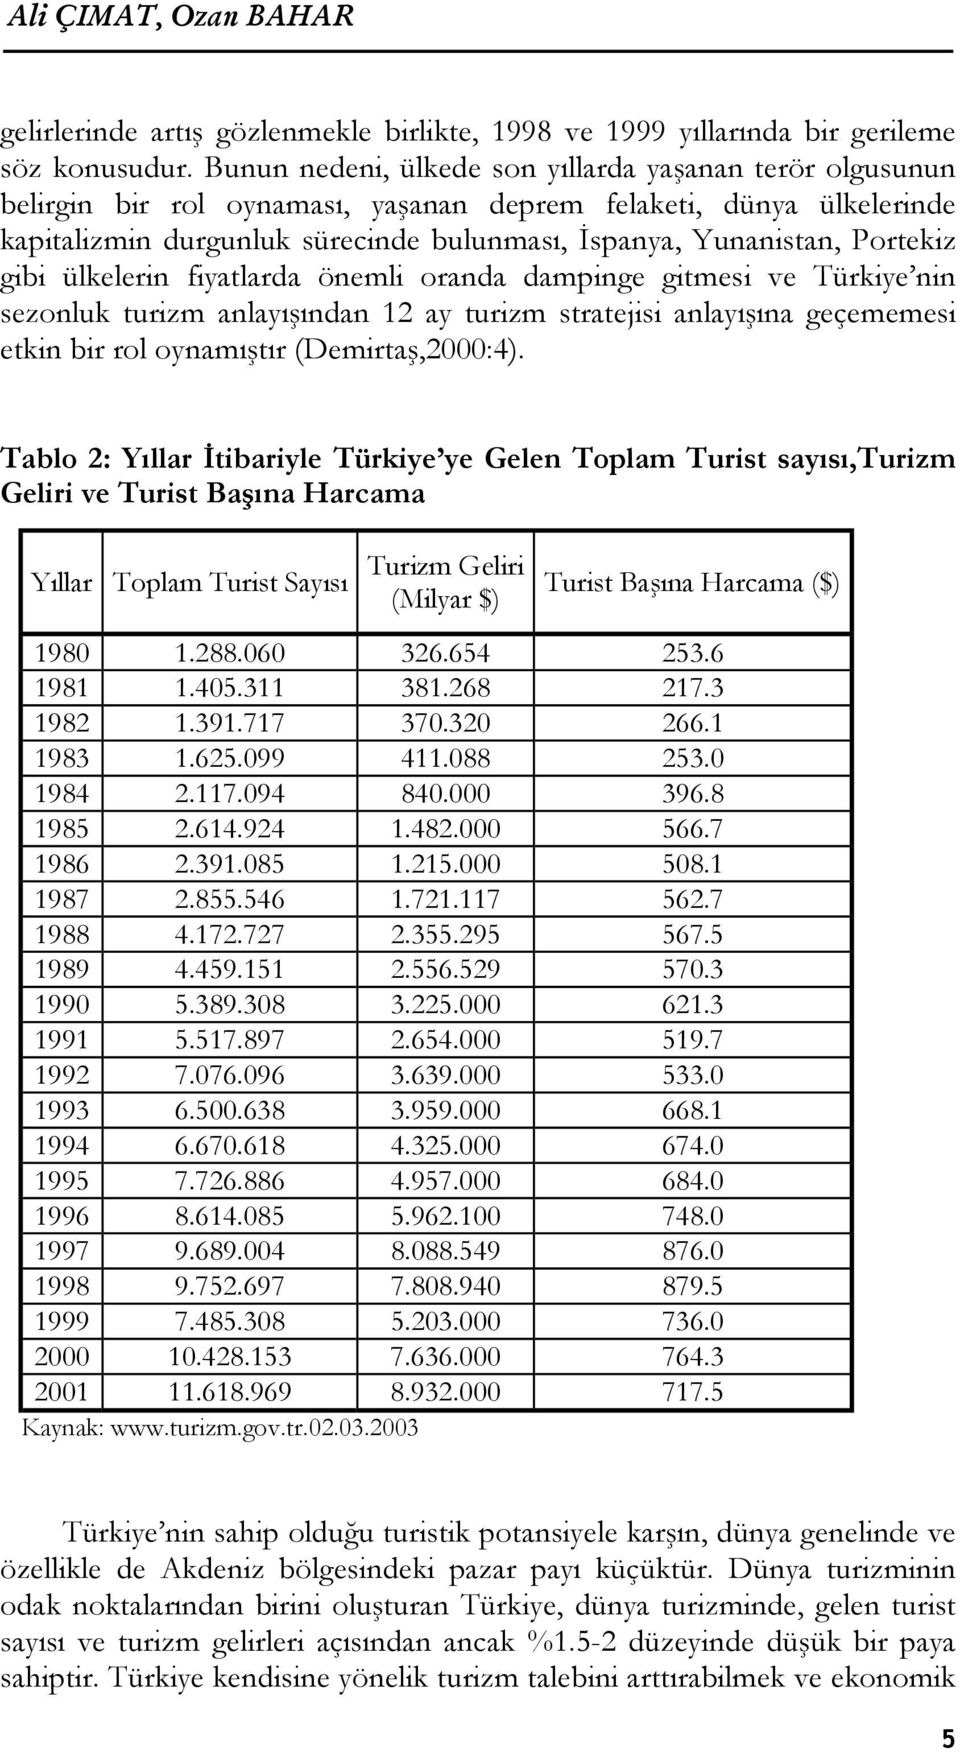 Portekiz gibi ülkelerin fiyatlarda önemli oranda dampinge gitmesi ve Türkiye nin sezonluk turizm anlayışından 12 ay turizm stratejisi anlayışına geçememesi etkin bir rol oynamıştır (Demirtaş,2000:4).